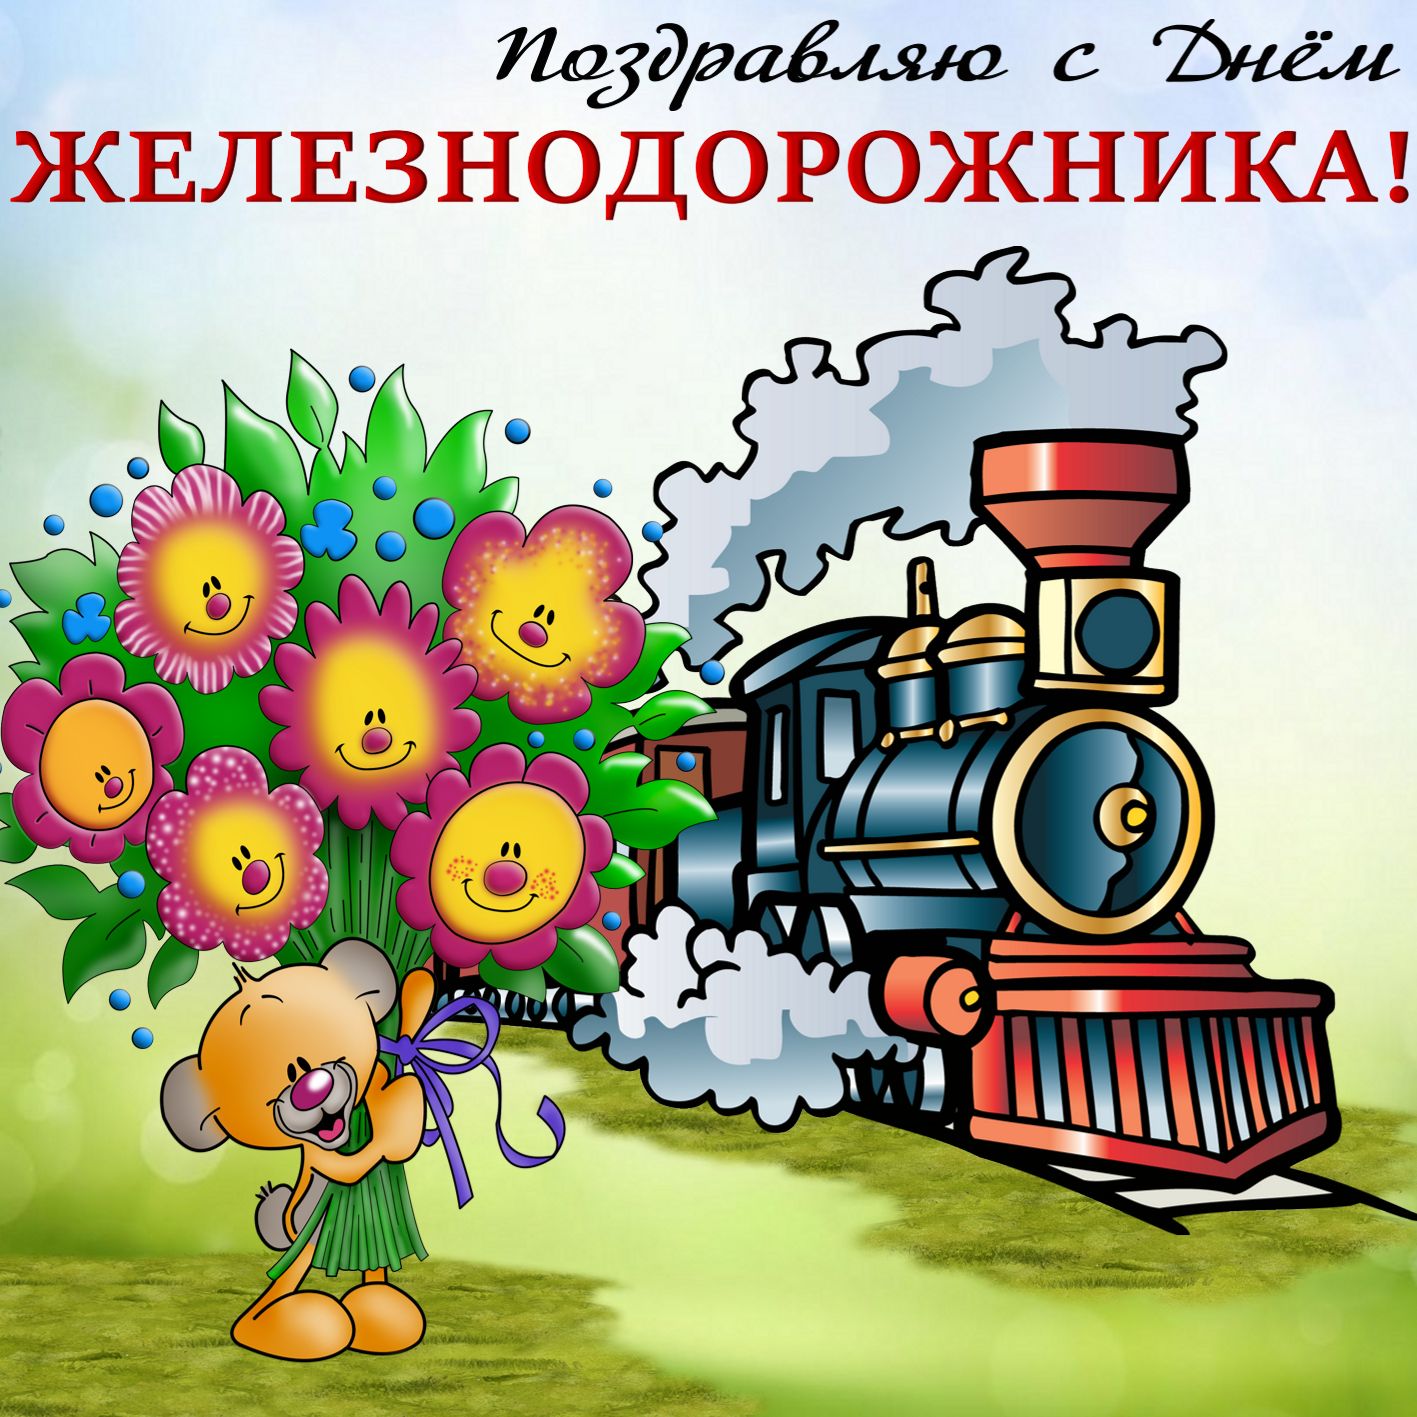 Веселая открытка поздравление с Днем железнодорожника